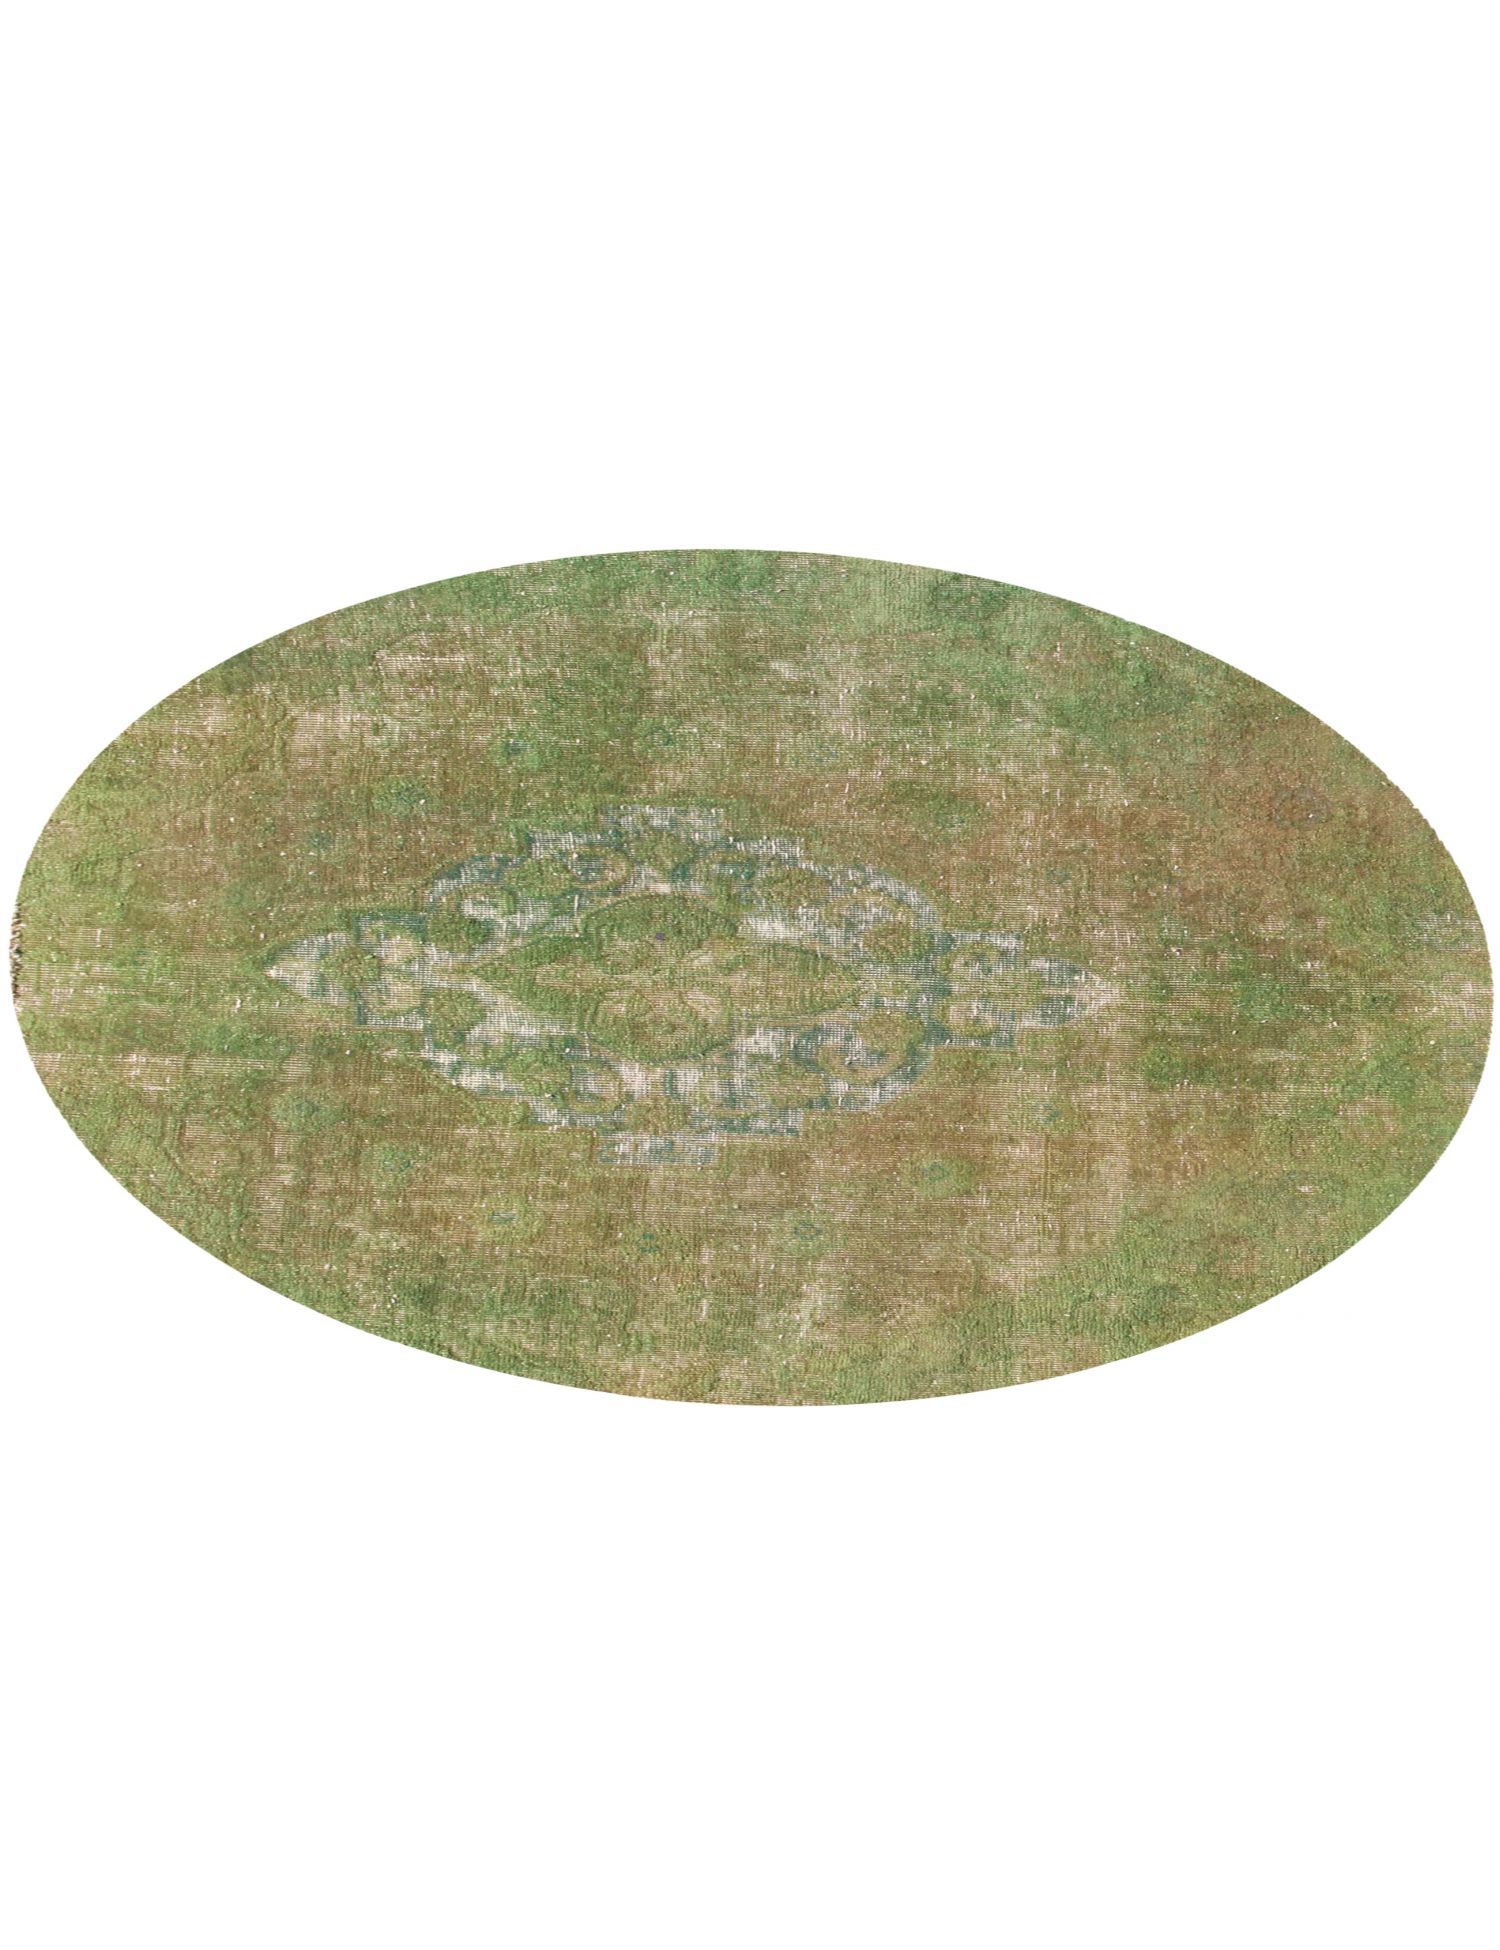 Rund  Vintage Teppich  grün <br/>146 x 146 cm